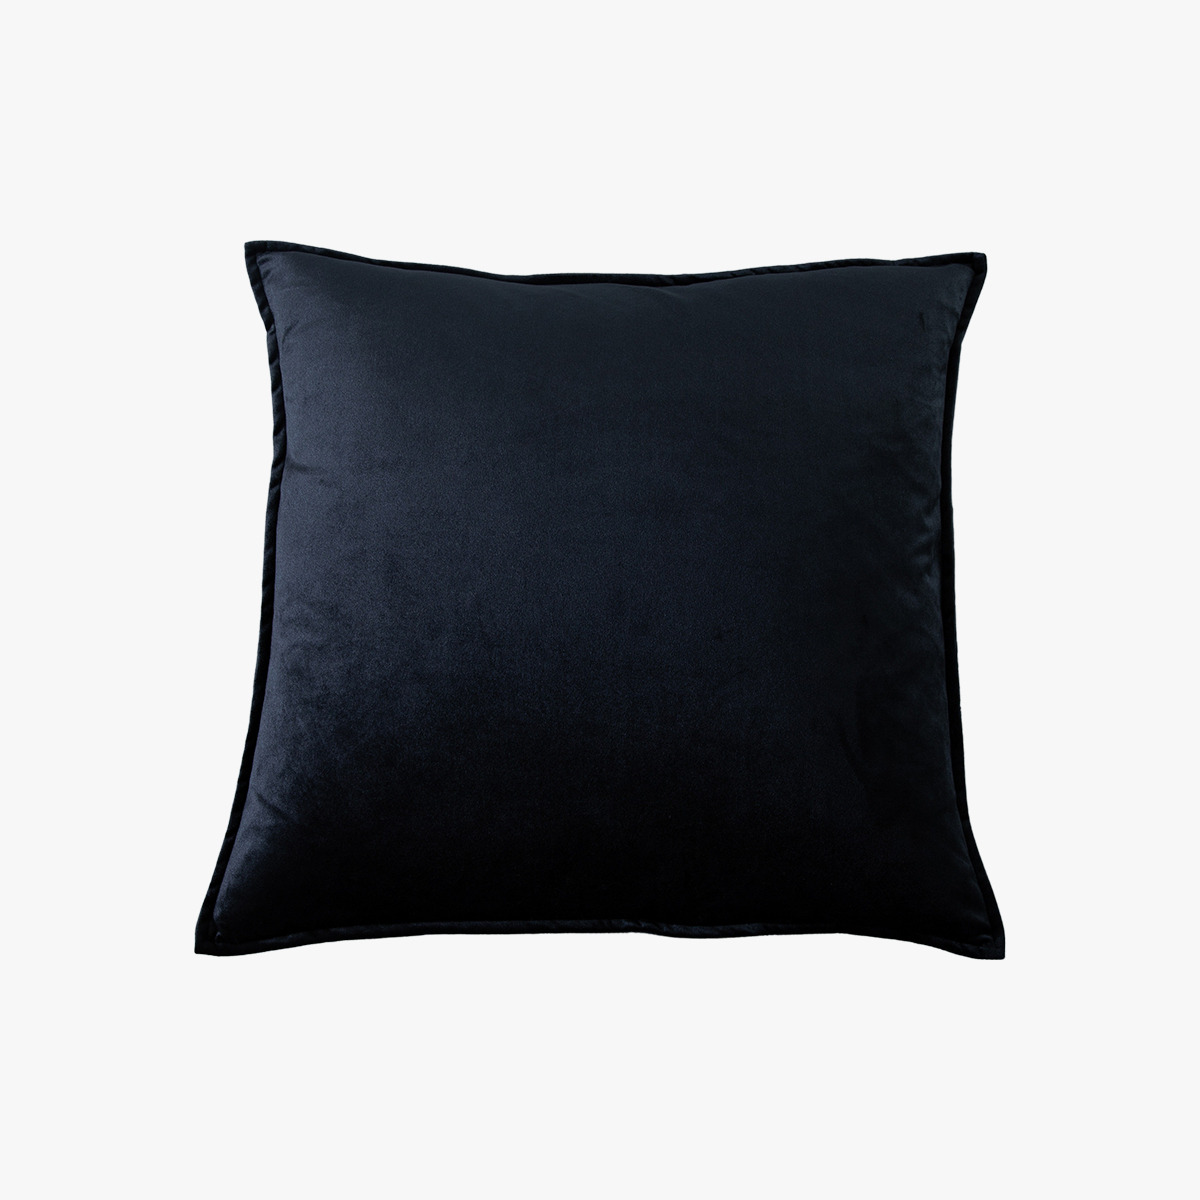 Doux Velvet Cushion in Black